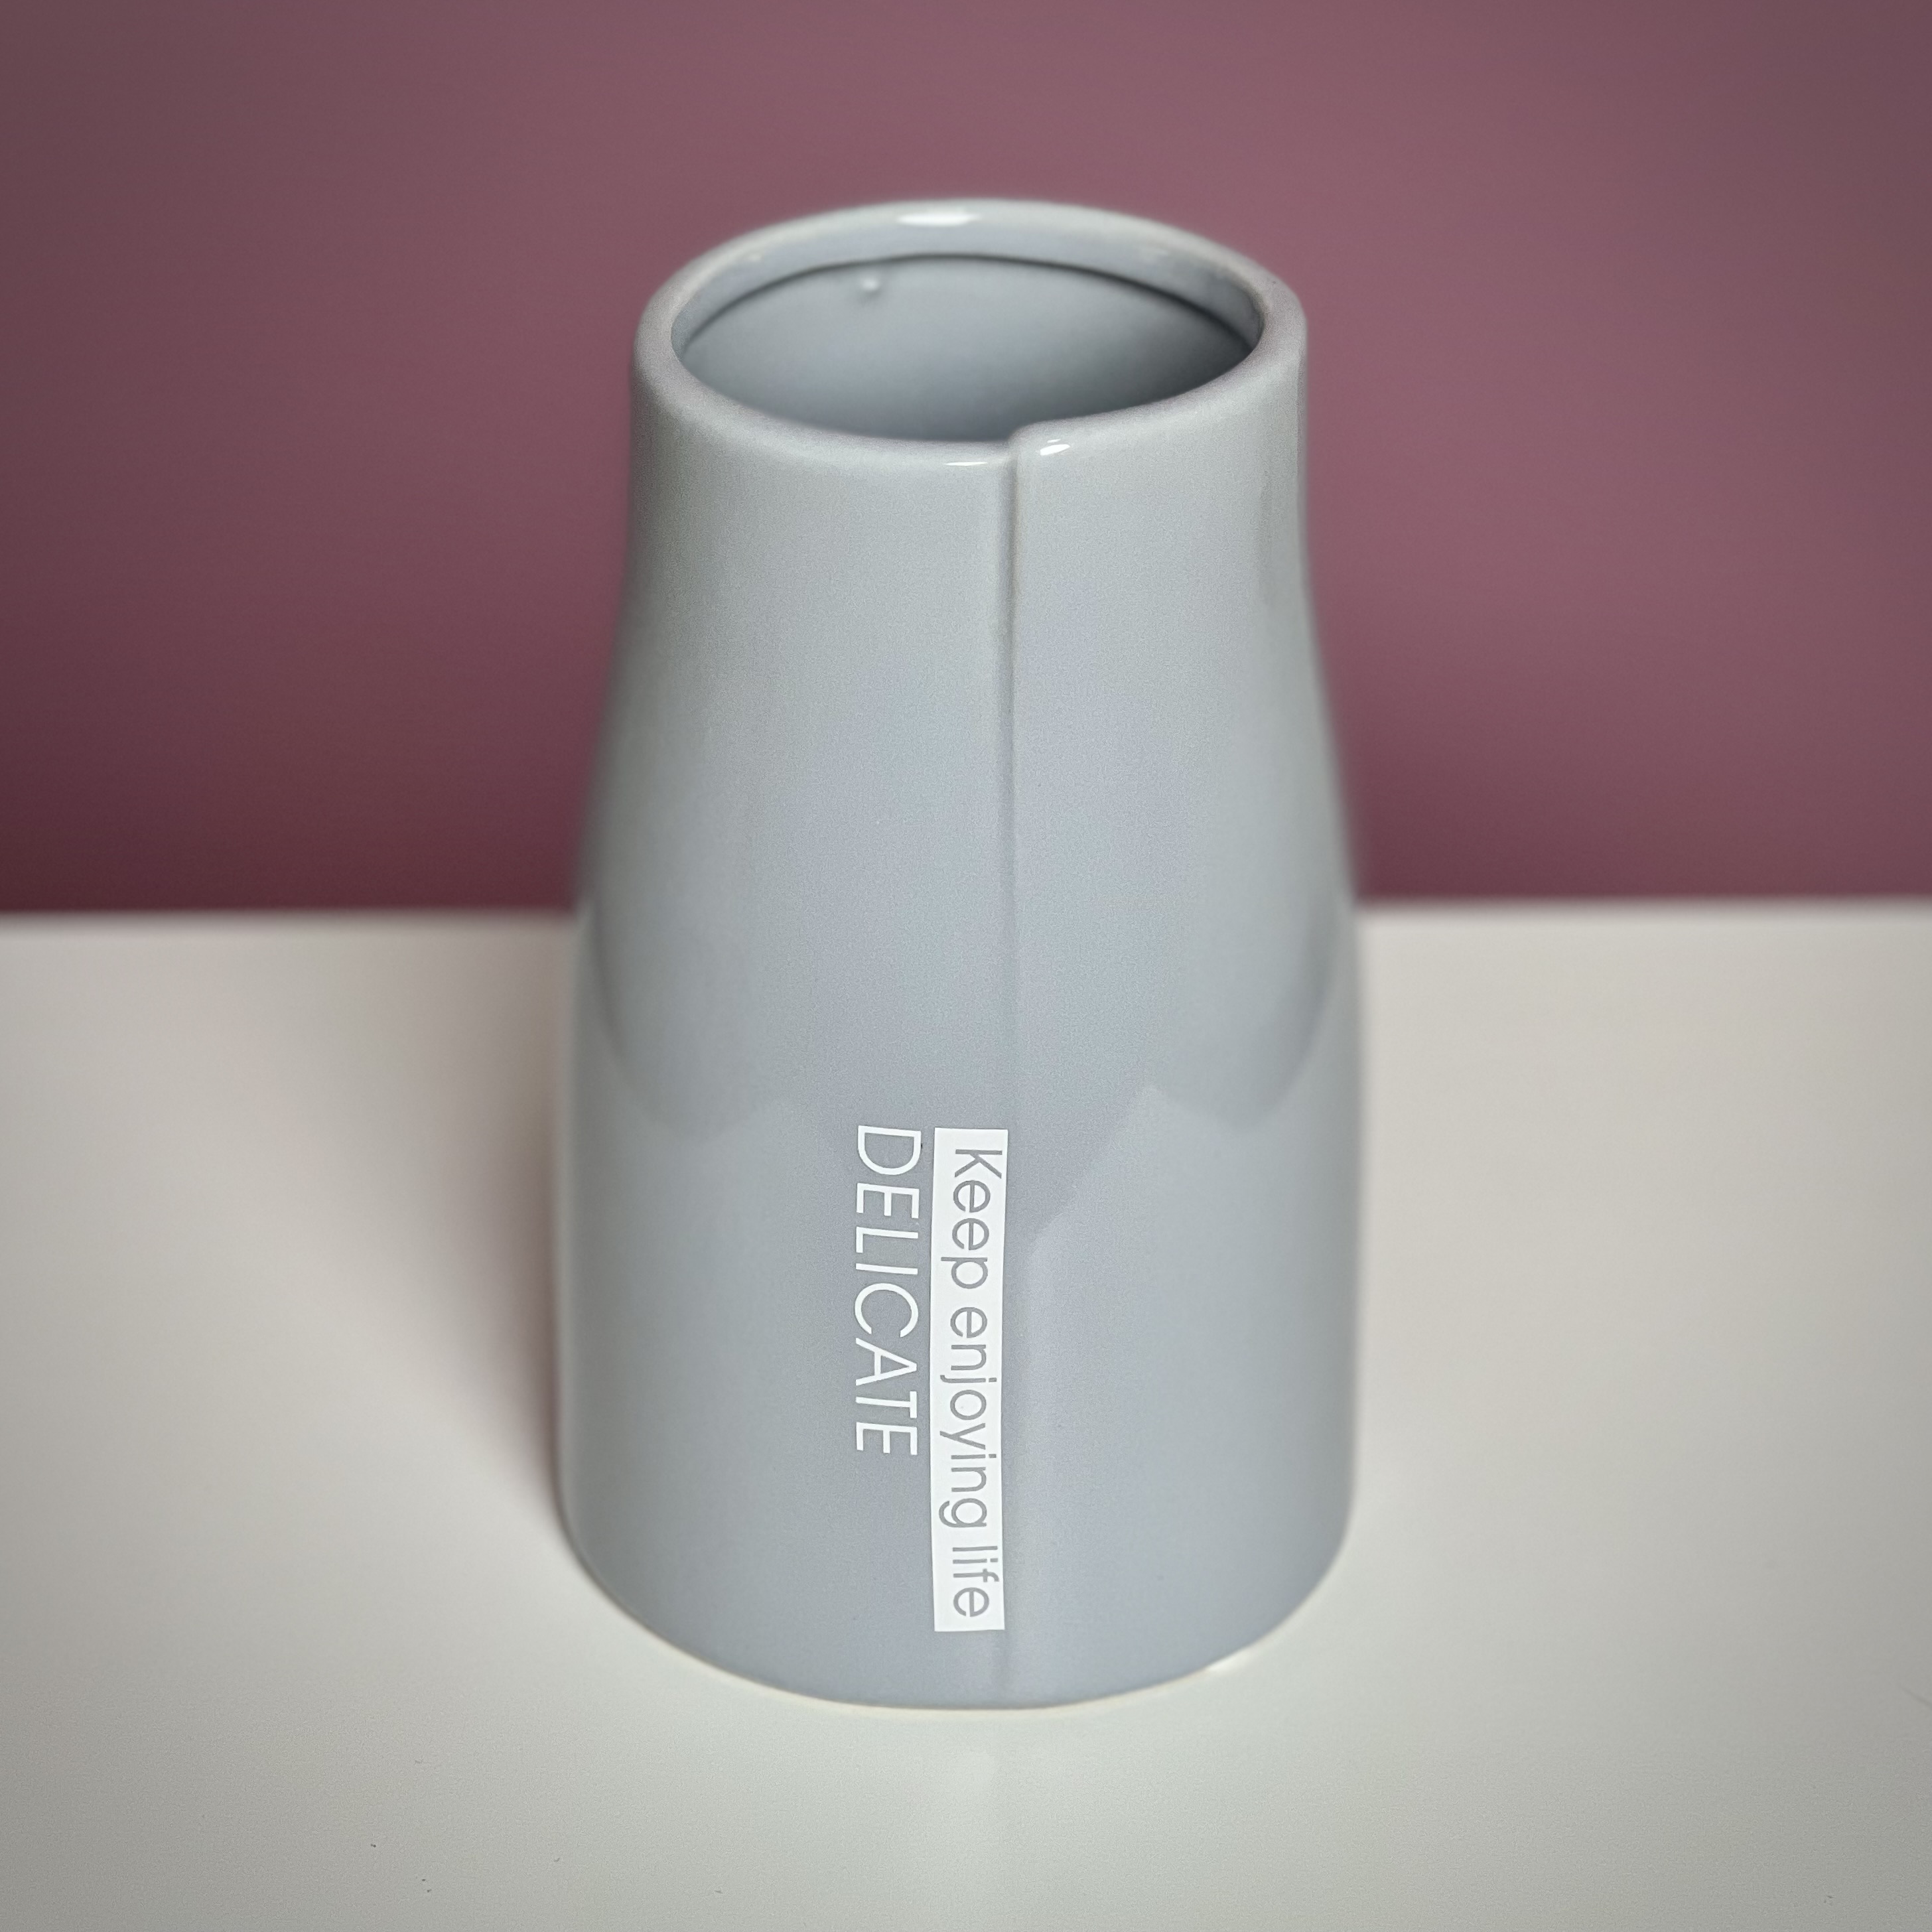 Ваза Стиль серая ваза капсула для жидкости с палочками air design ваза серая